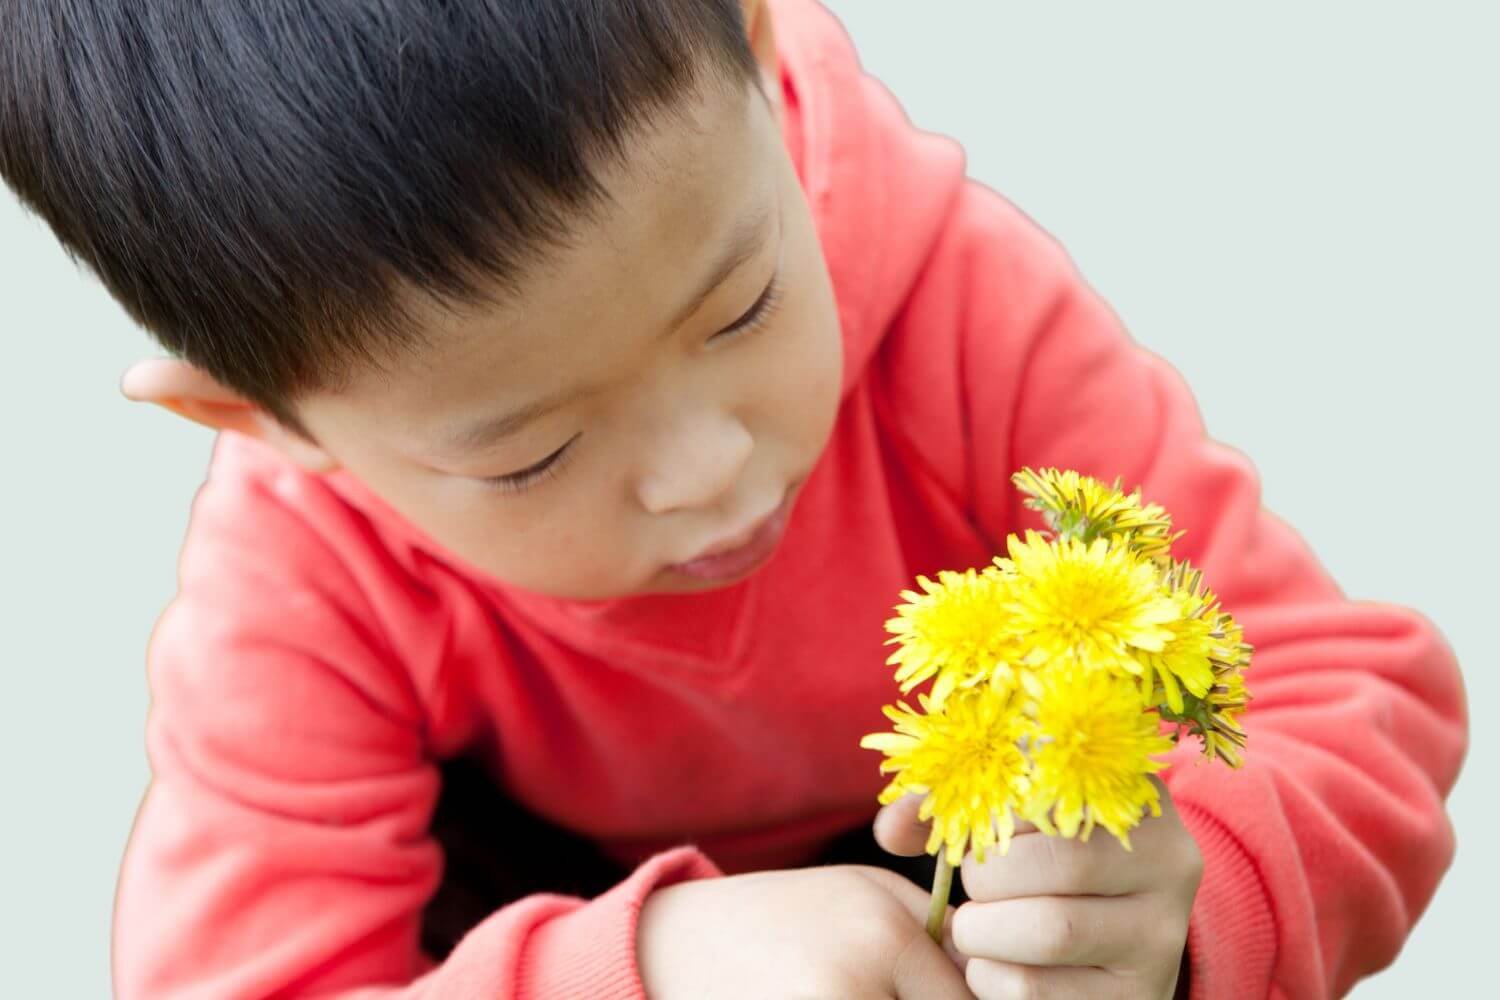 little boy holding dandelions